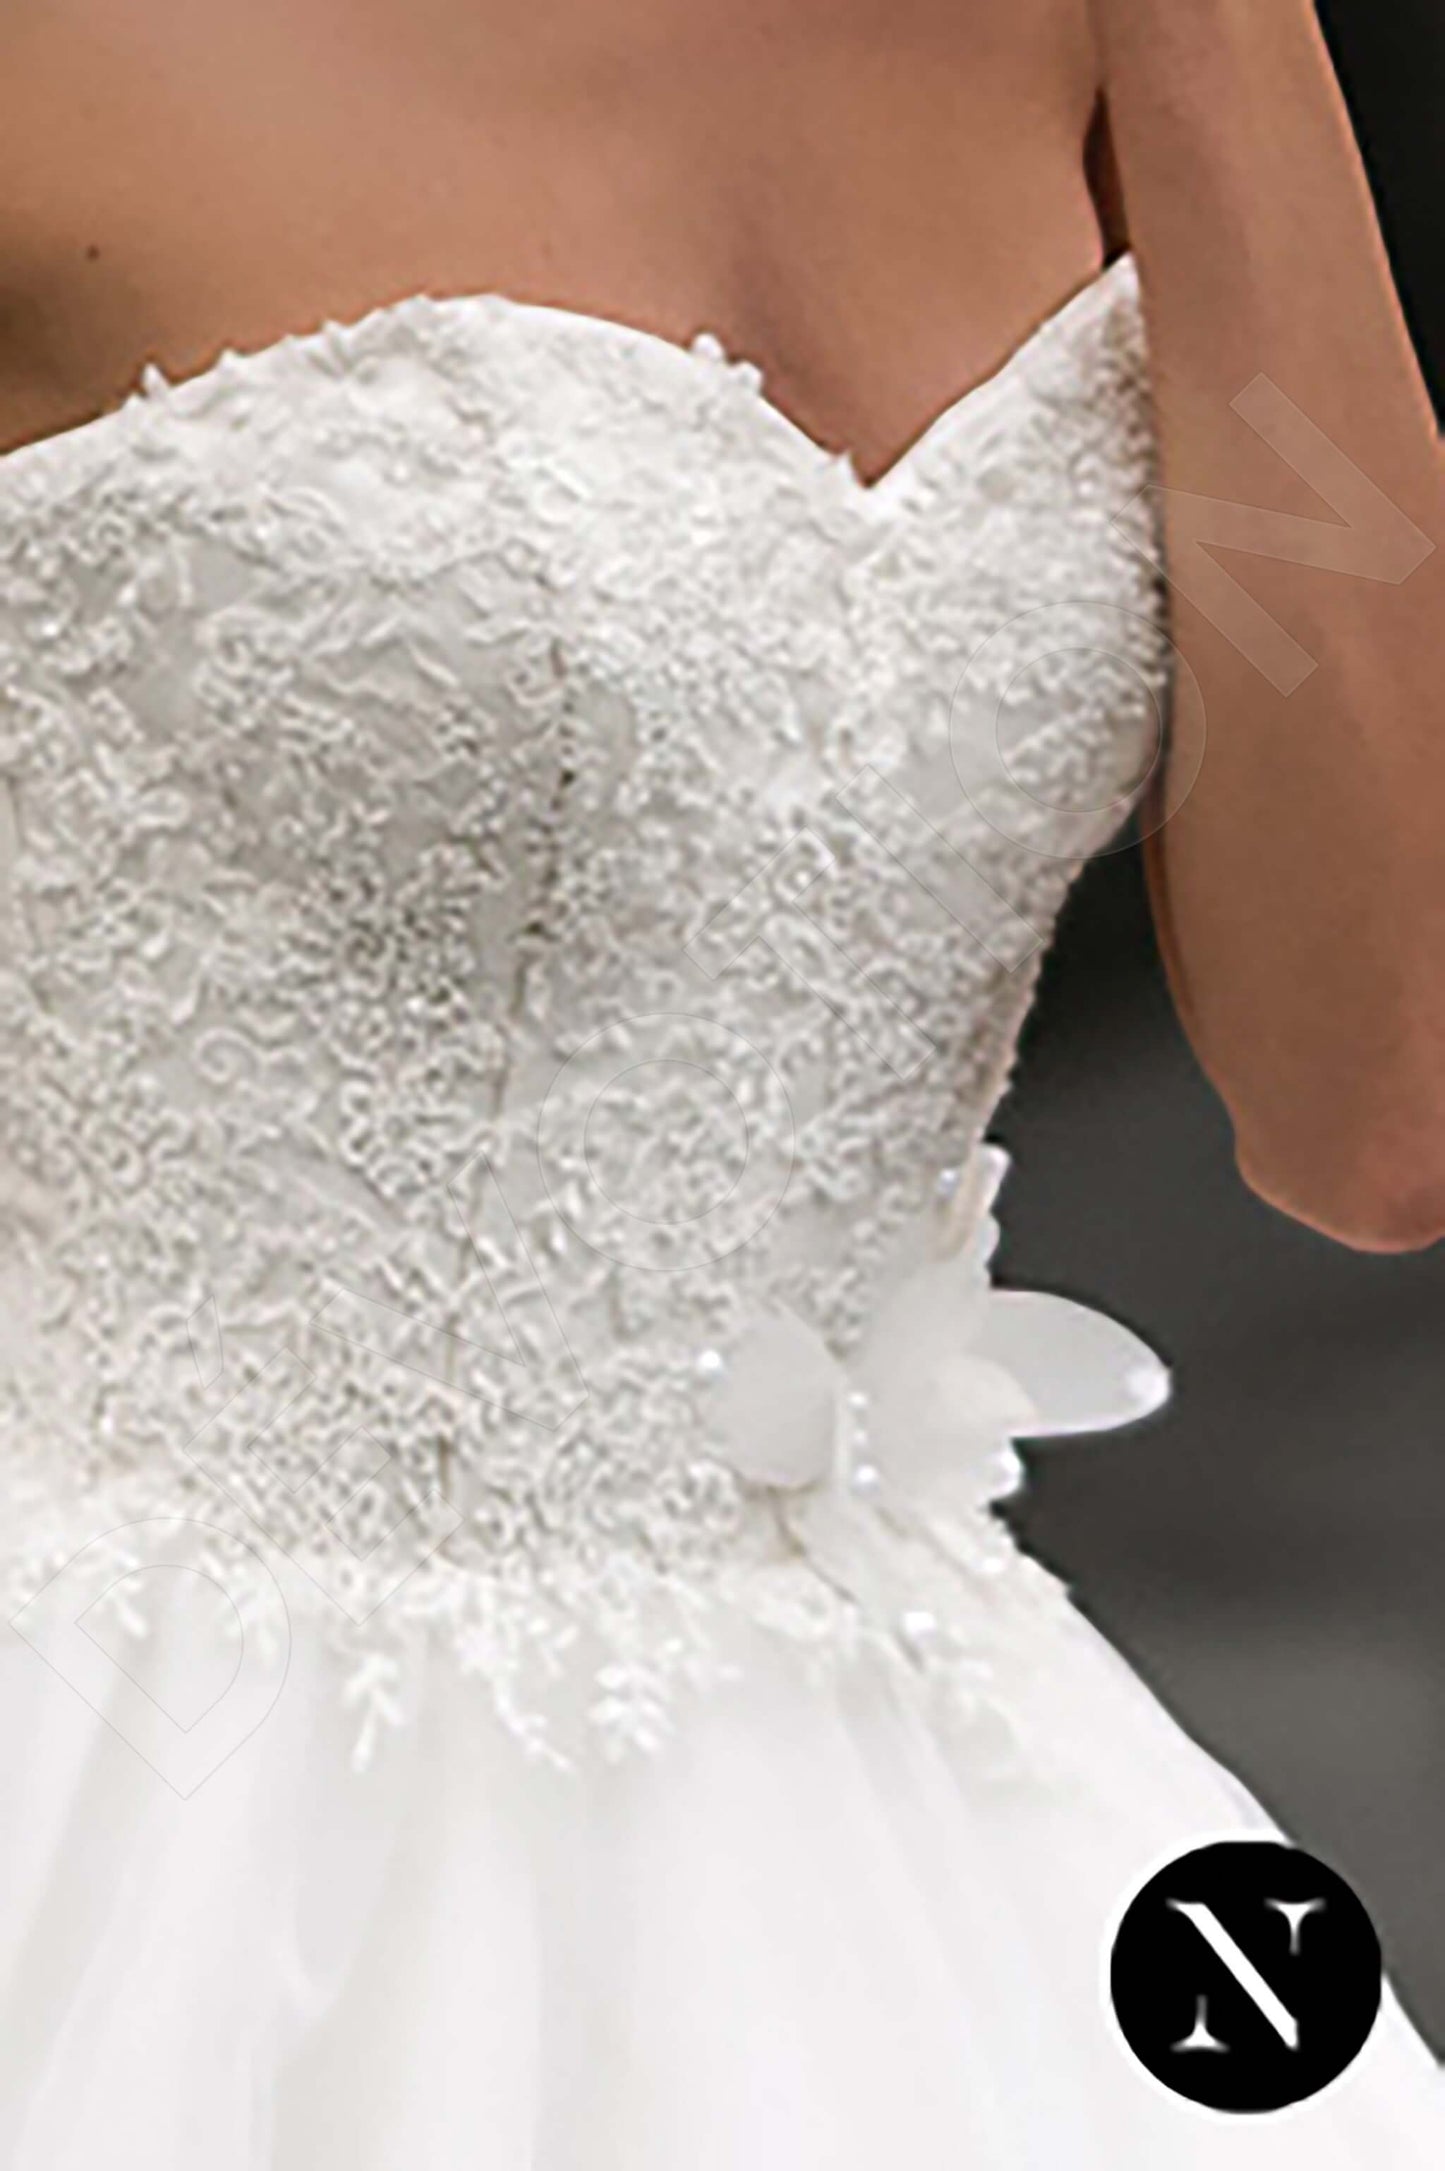 Esperanza Open back Princess/Ball Gown Strapless Wedding Dress 3